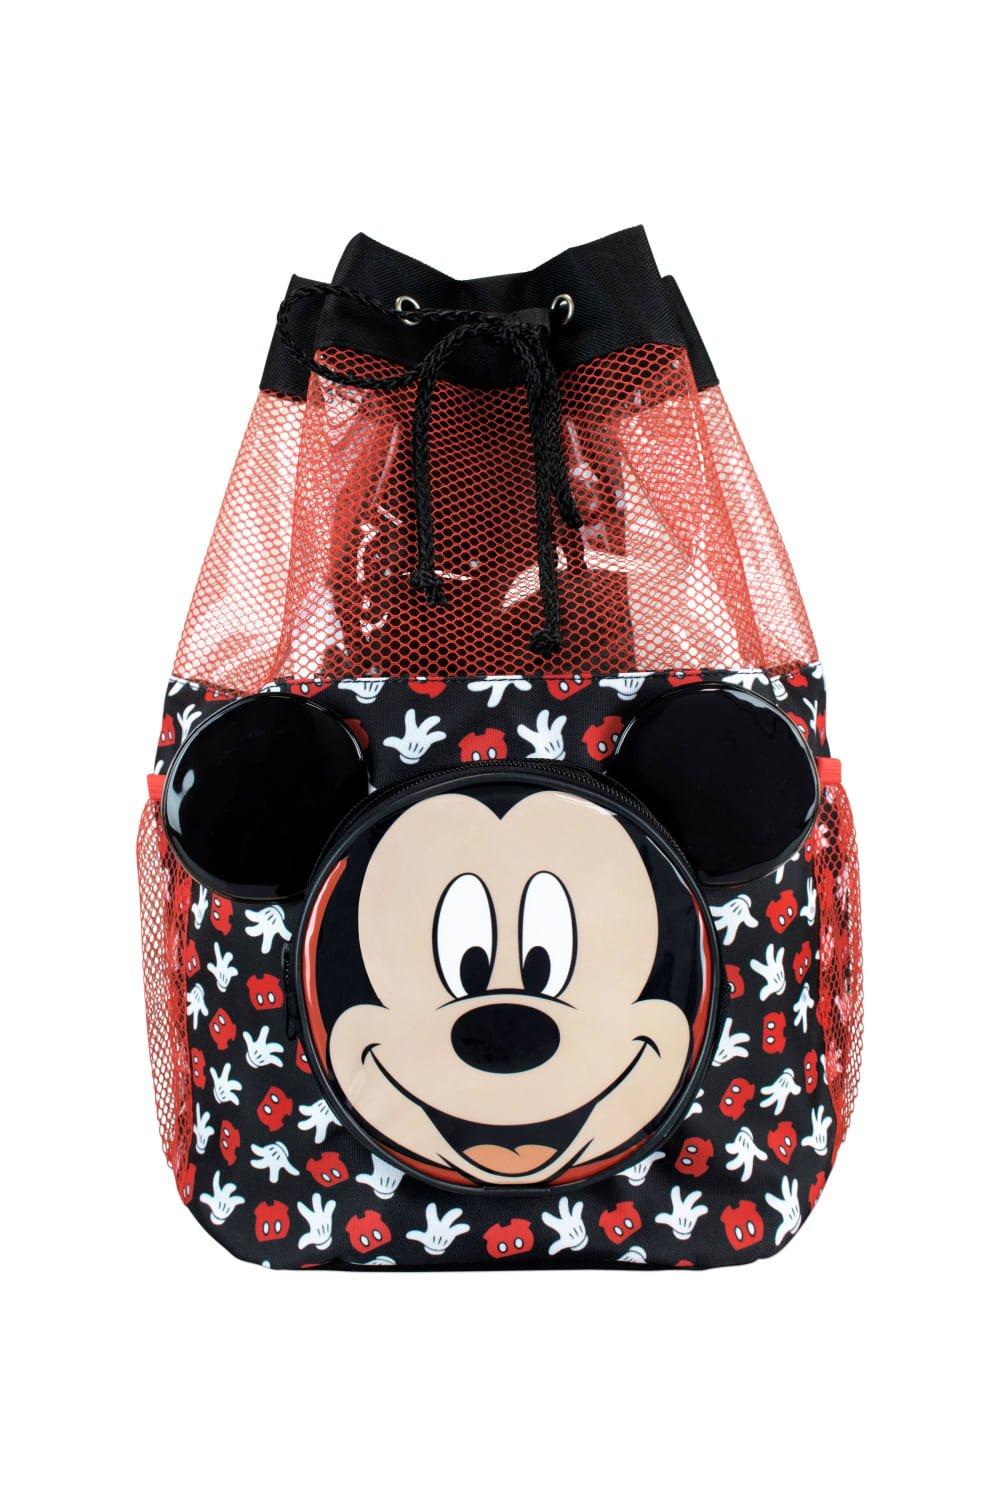 Сумка для плавания с Микки Маусом Disney, черный сумка на плечо для девочек с изображением микки мауса из диснея